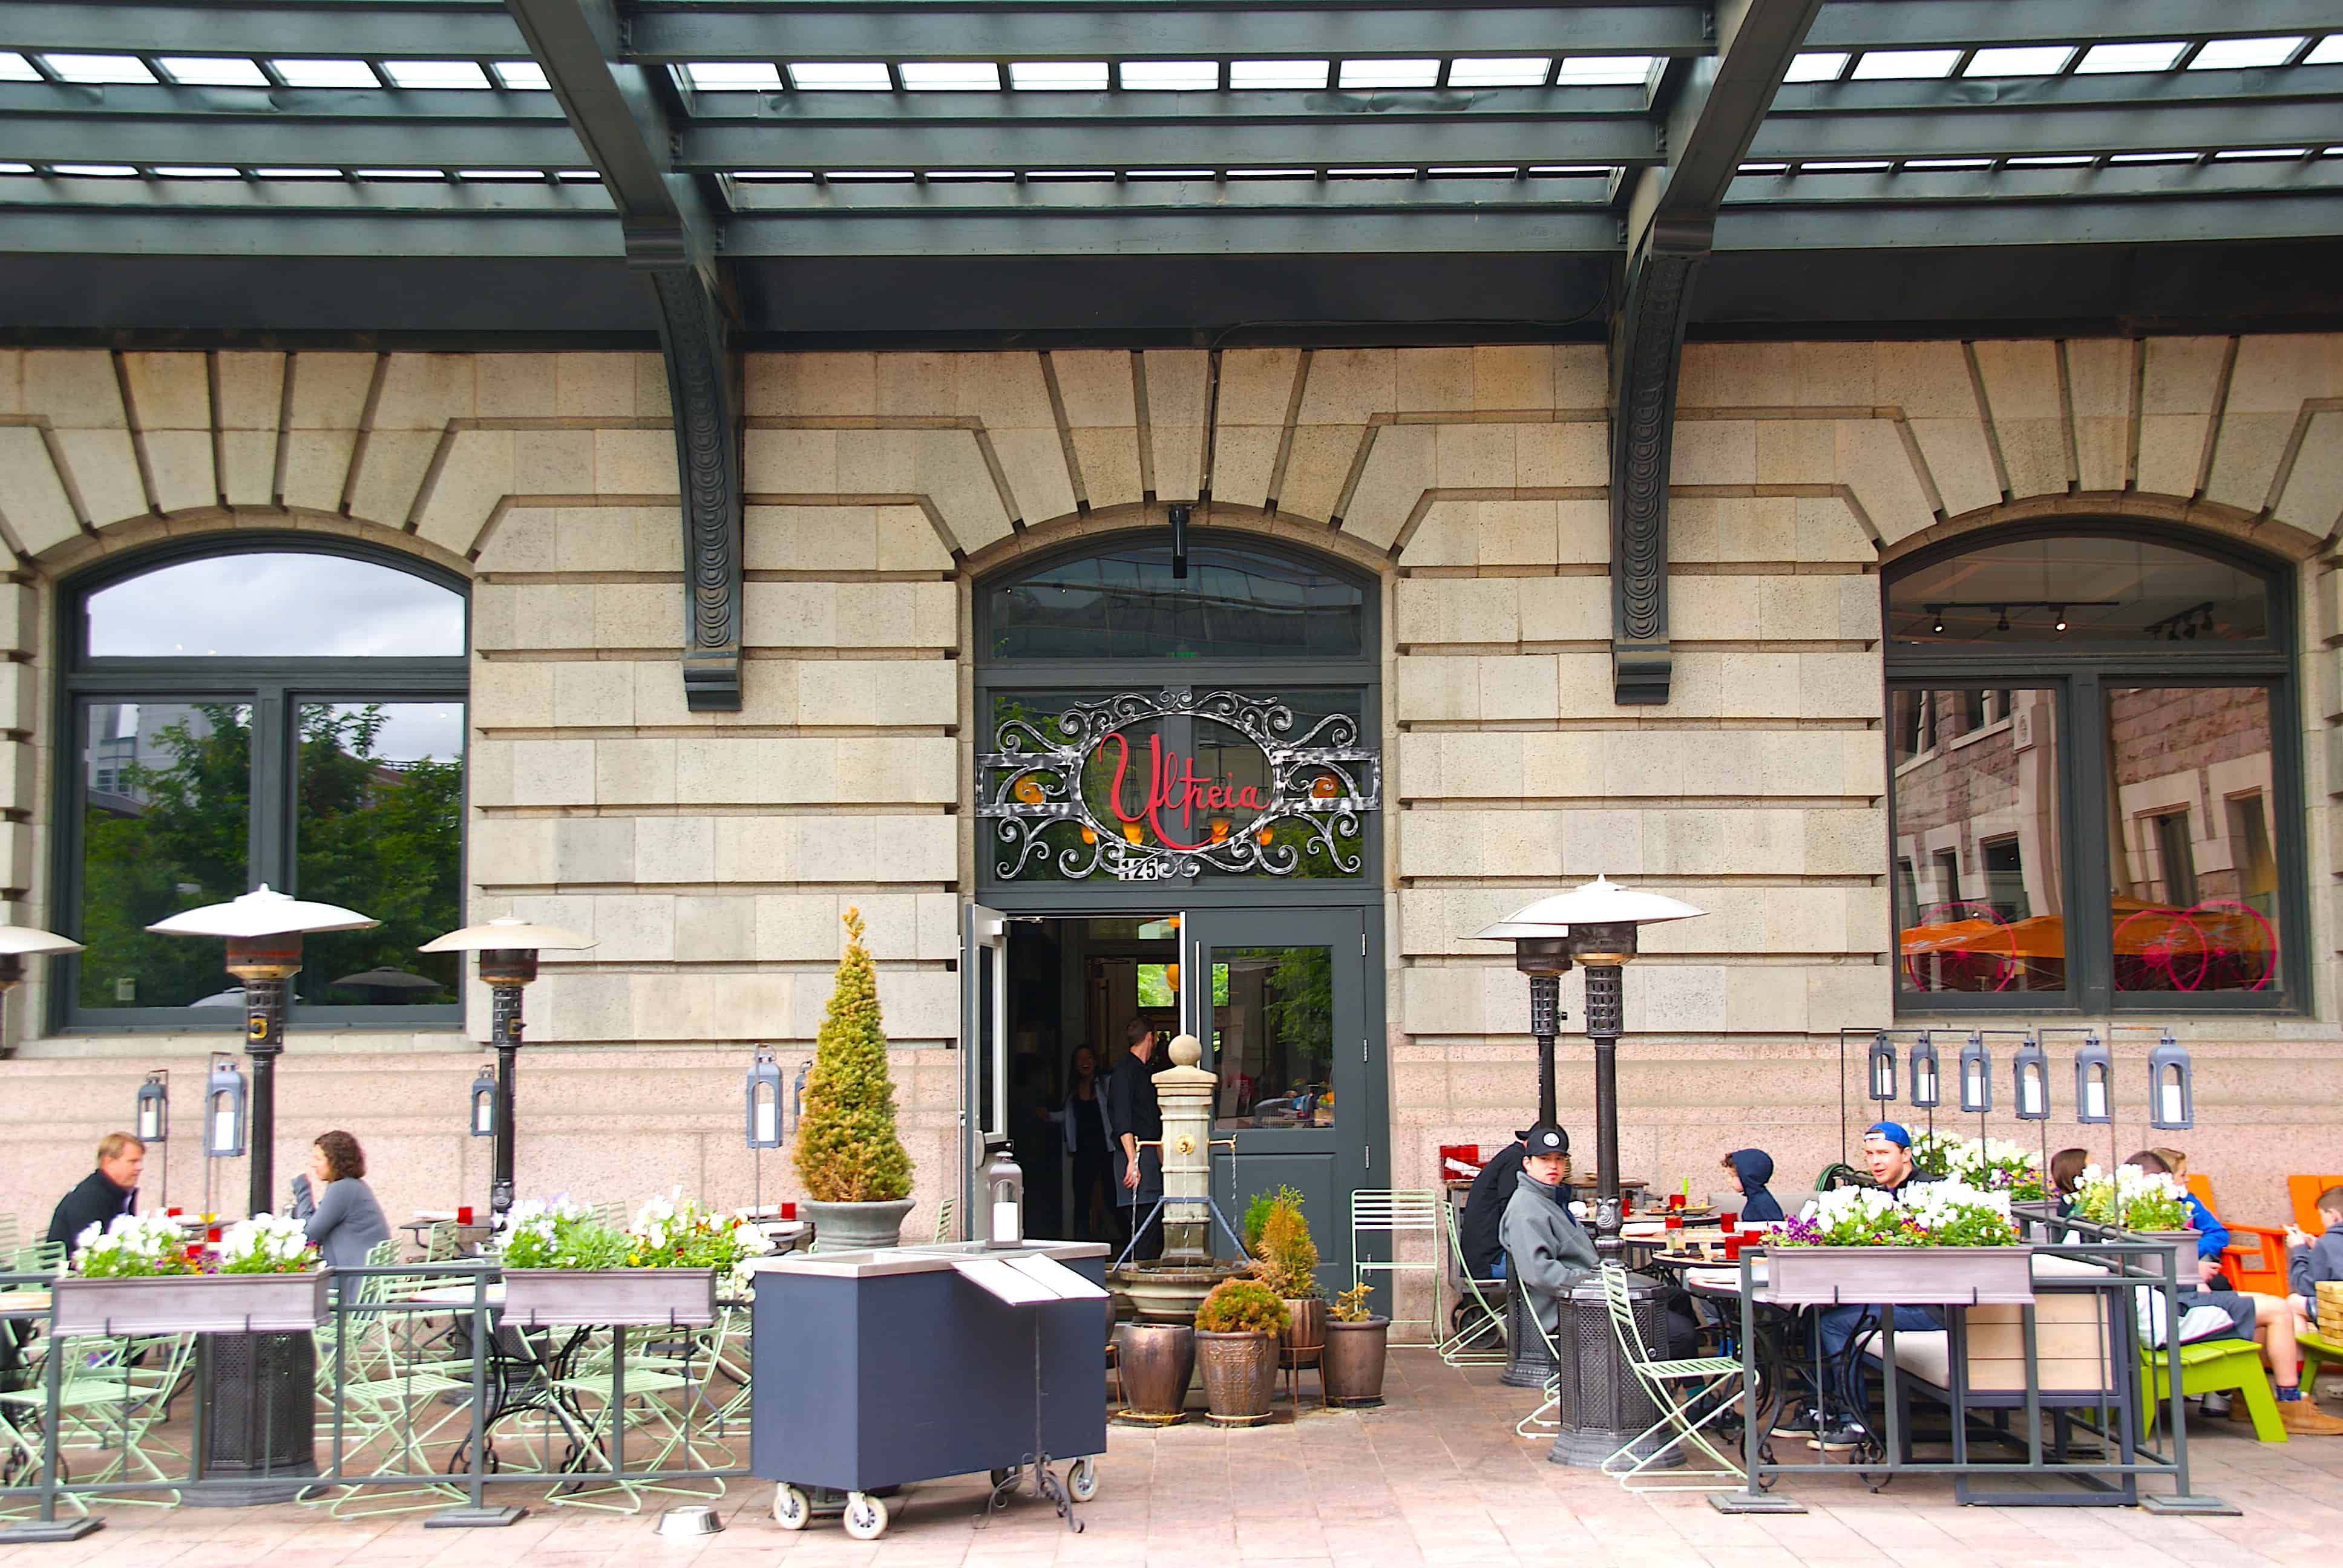 Ultreia Restaurant Union Station Denver